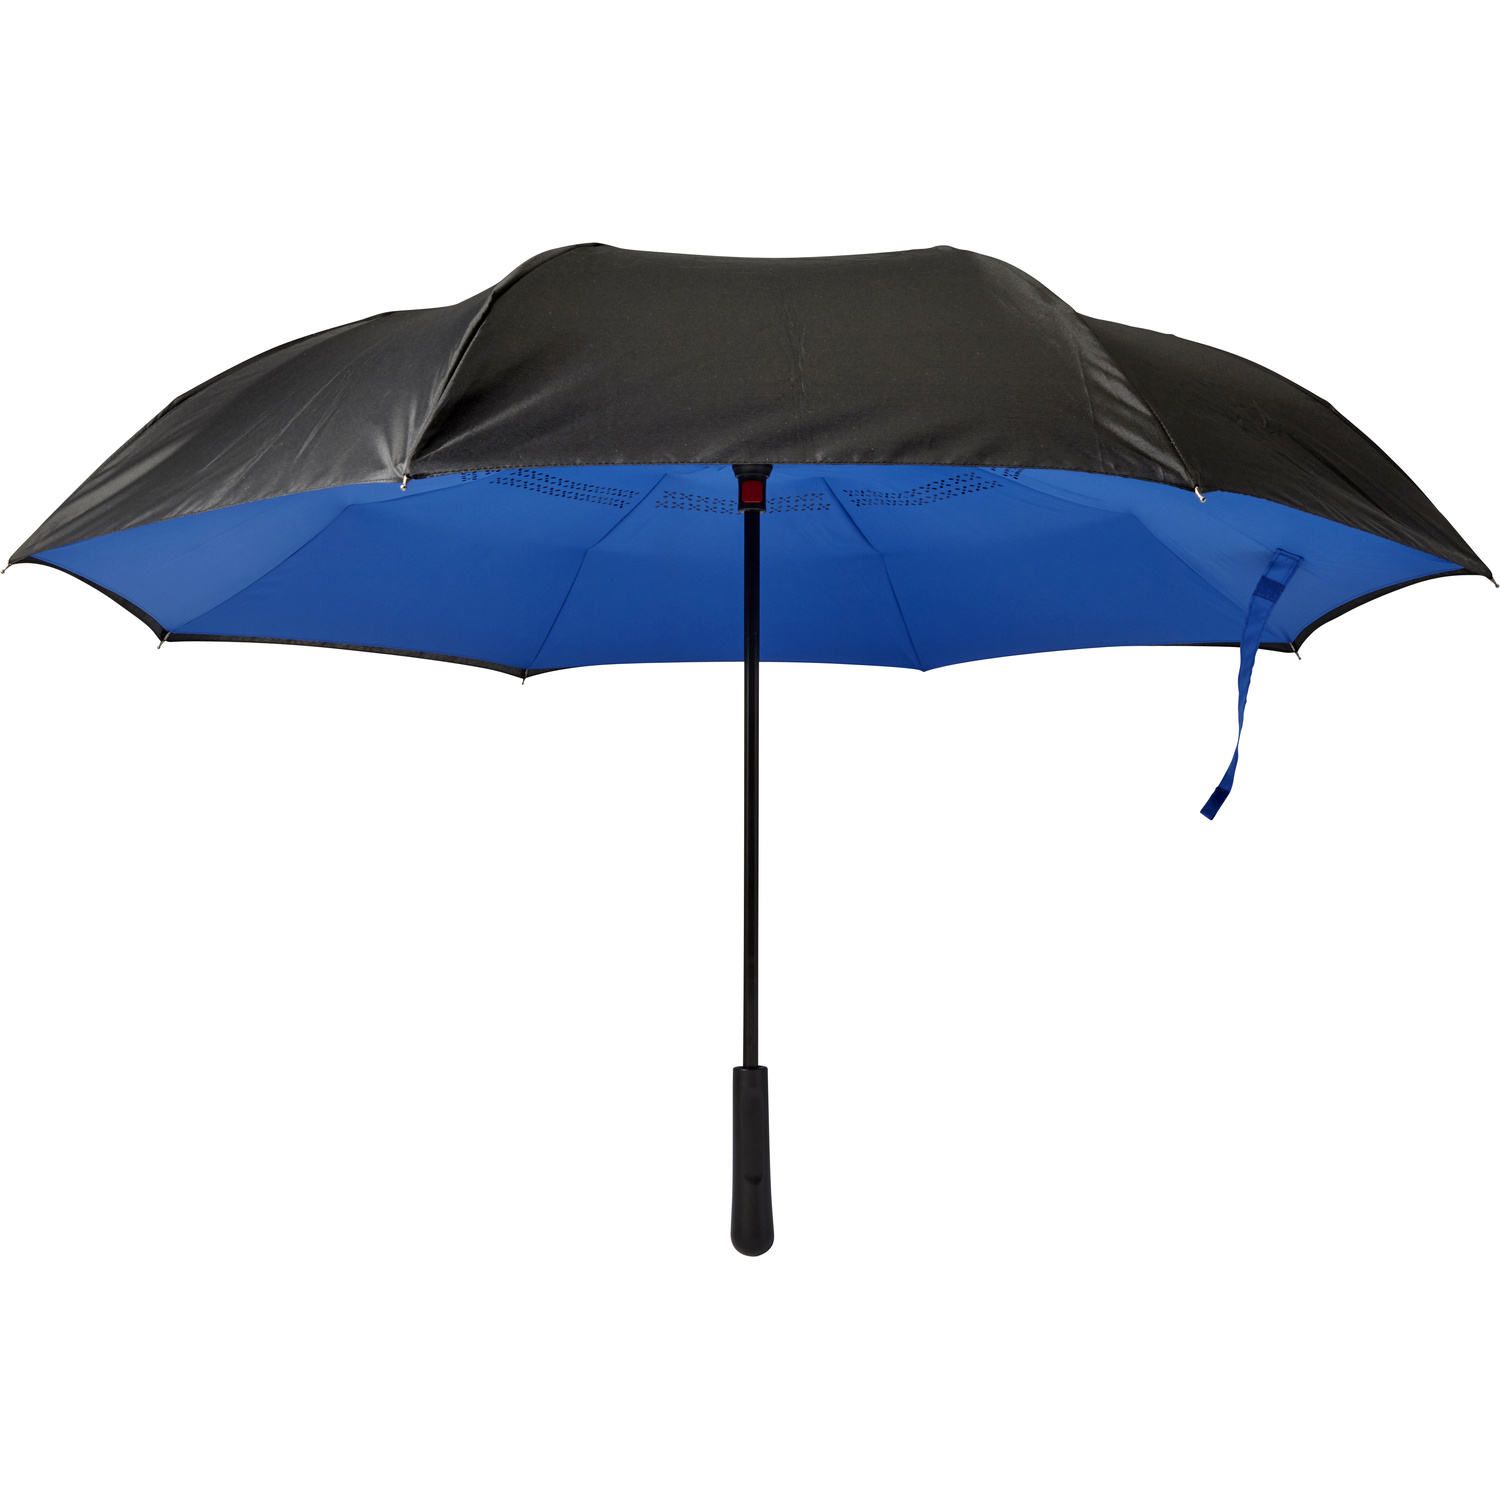 007963 005999999 2d000 frt pro01 fal - Foldable storm umbrella